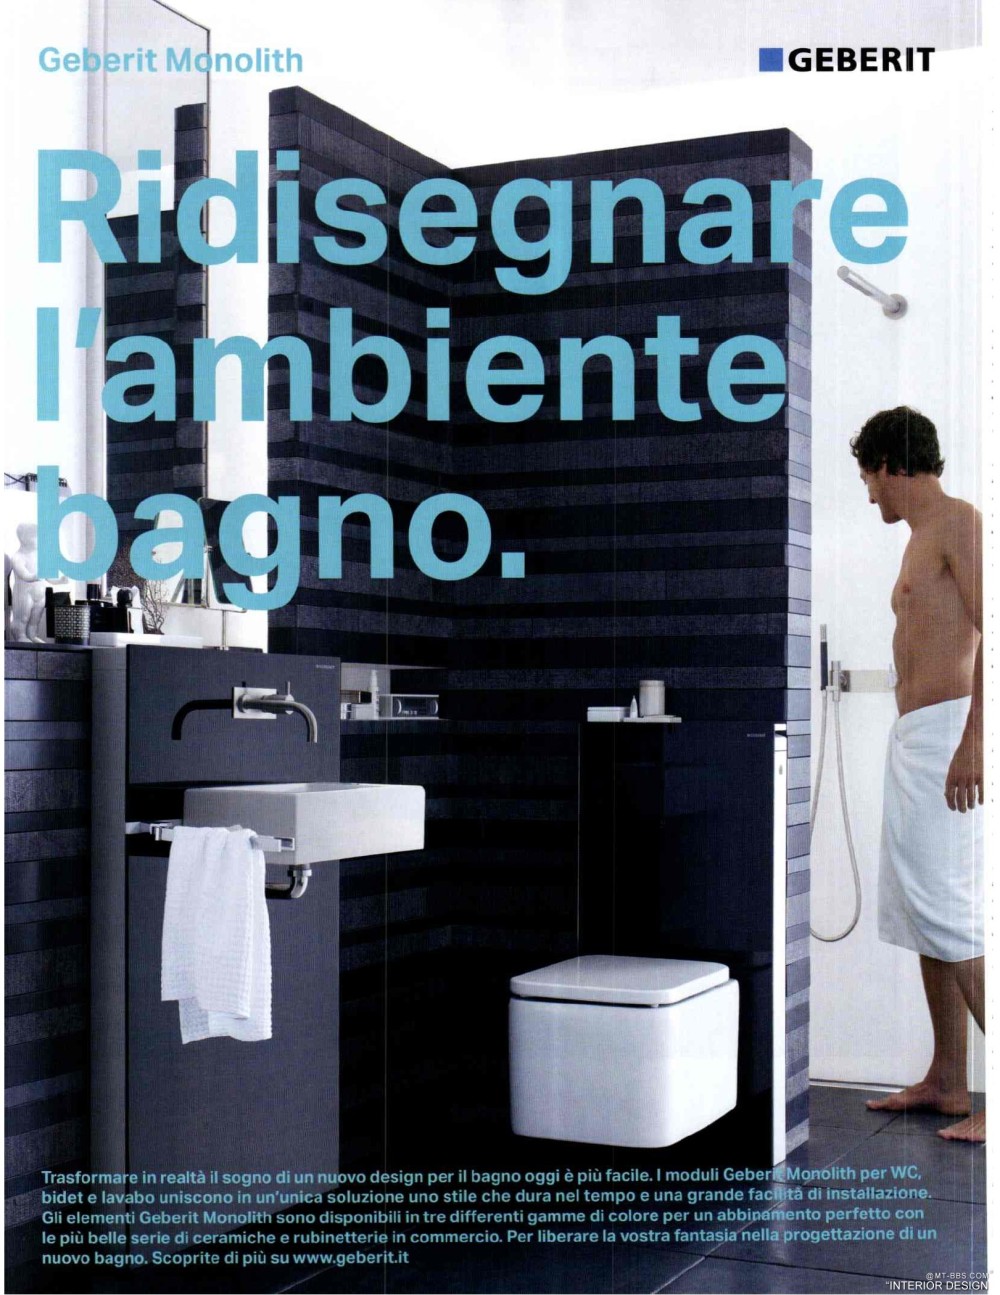 意大利AD 杂志 2012年全年JPG高清版本 全免（上传完毕）_0060.jpg